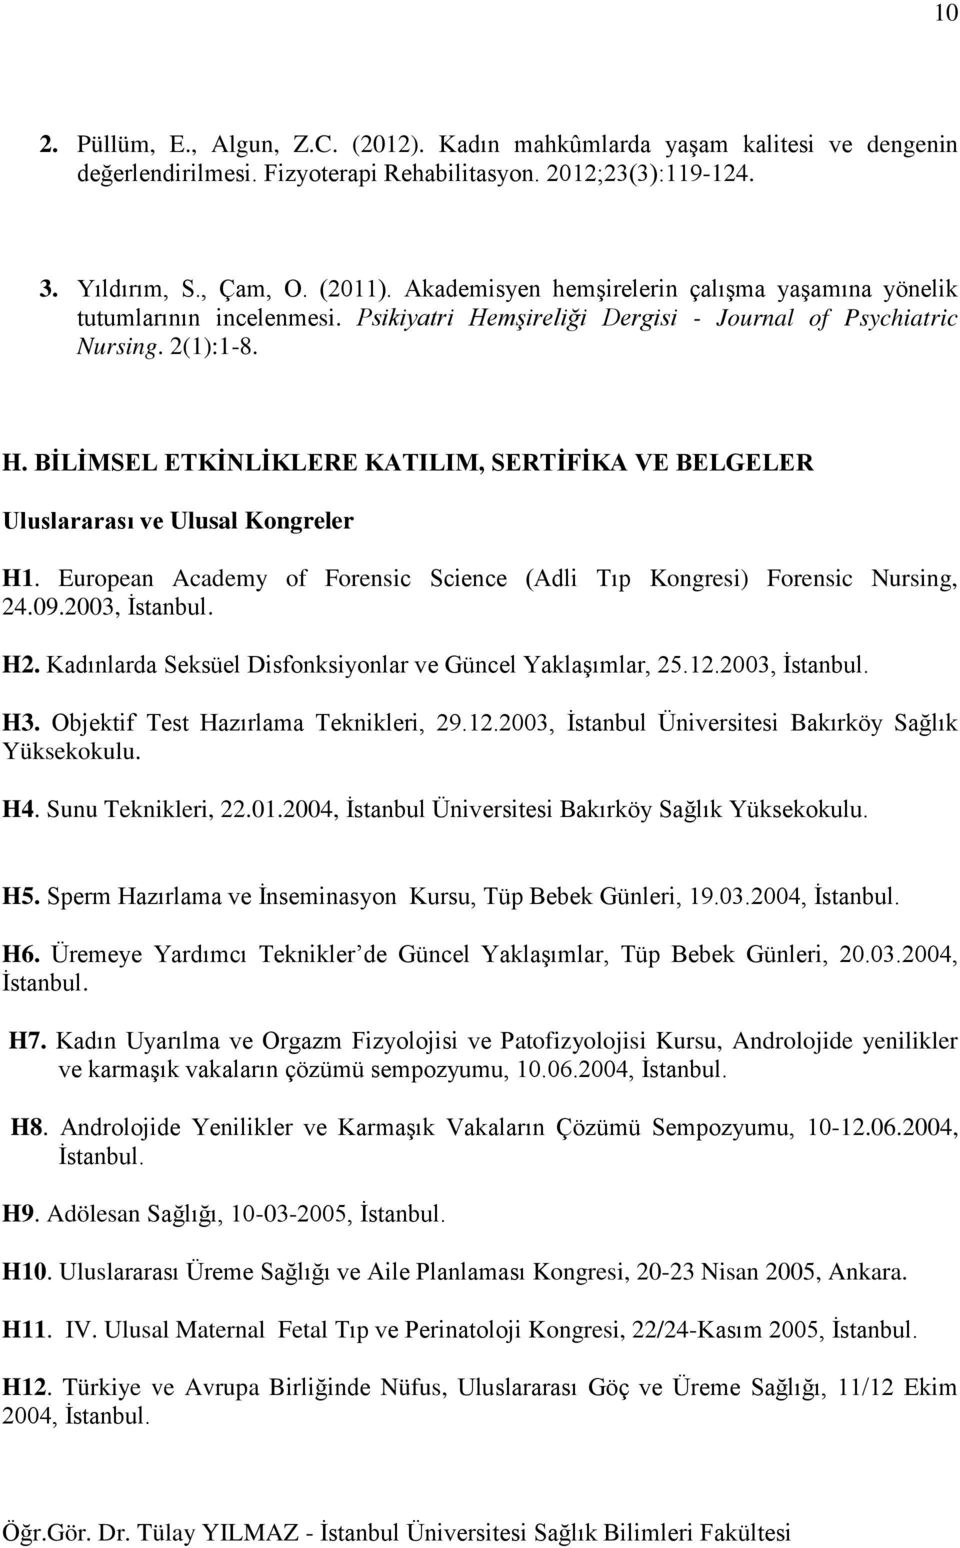 European Academy of Forensic Science (Adli Tıp Kongresi) Forensic Nursing, 24.09.2003, İstanbul. H2. Kadınlarda Seksüel Disfonksiyonlar ve Güncel Yaklaşımlar, 25.12.2003, İstanbul. H3.